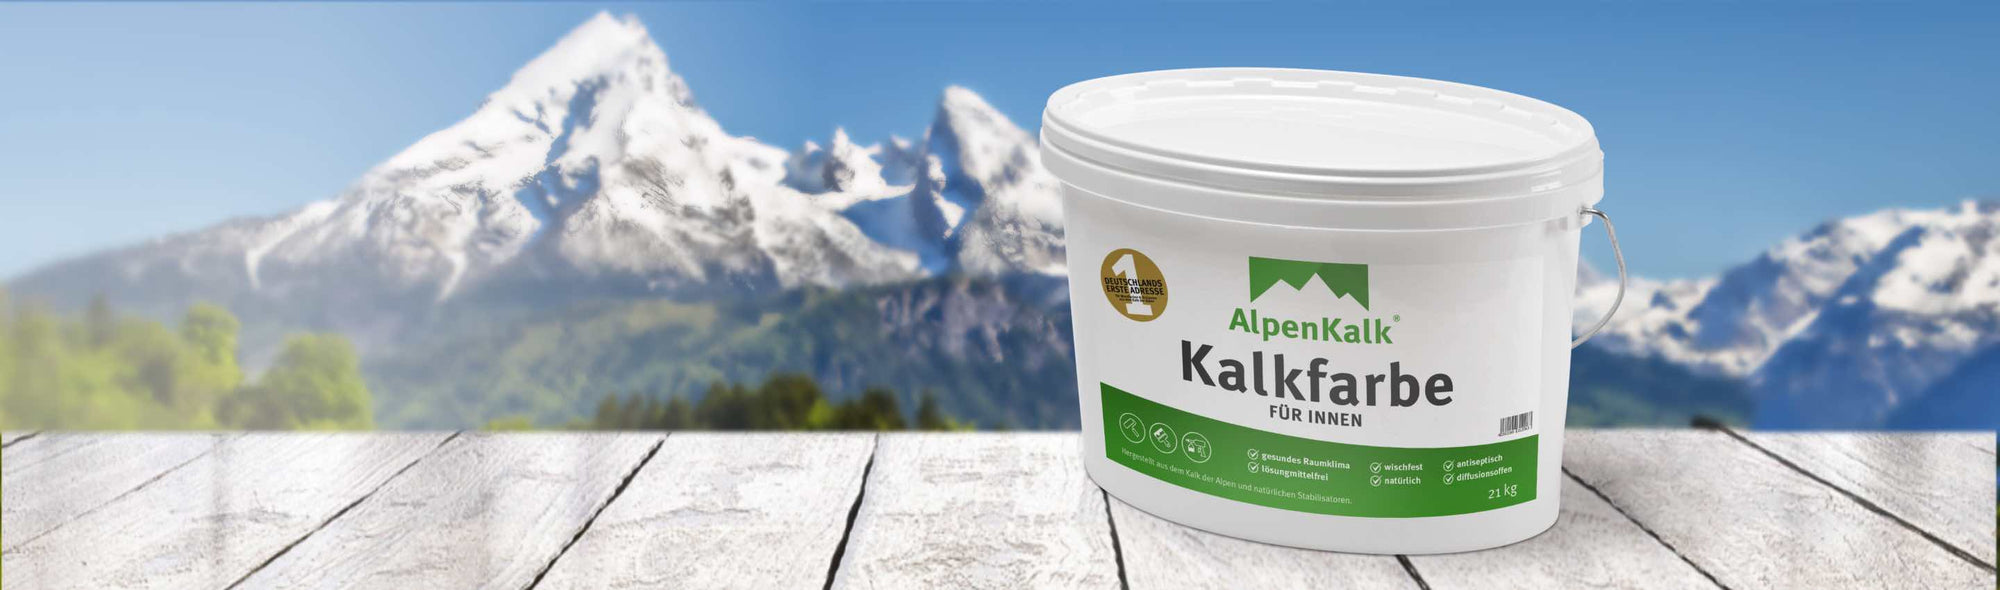 Alpenkalk Kalkfarbe für innen vor einem Bergpanorama 